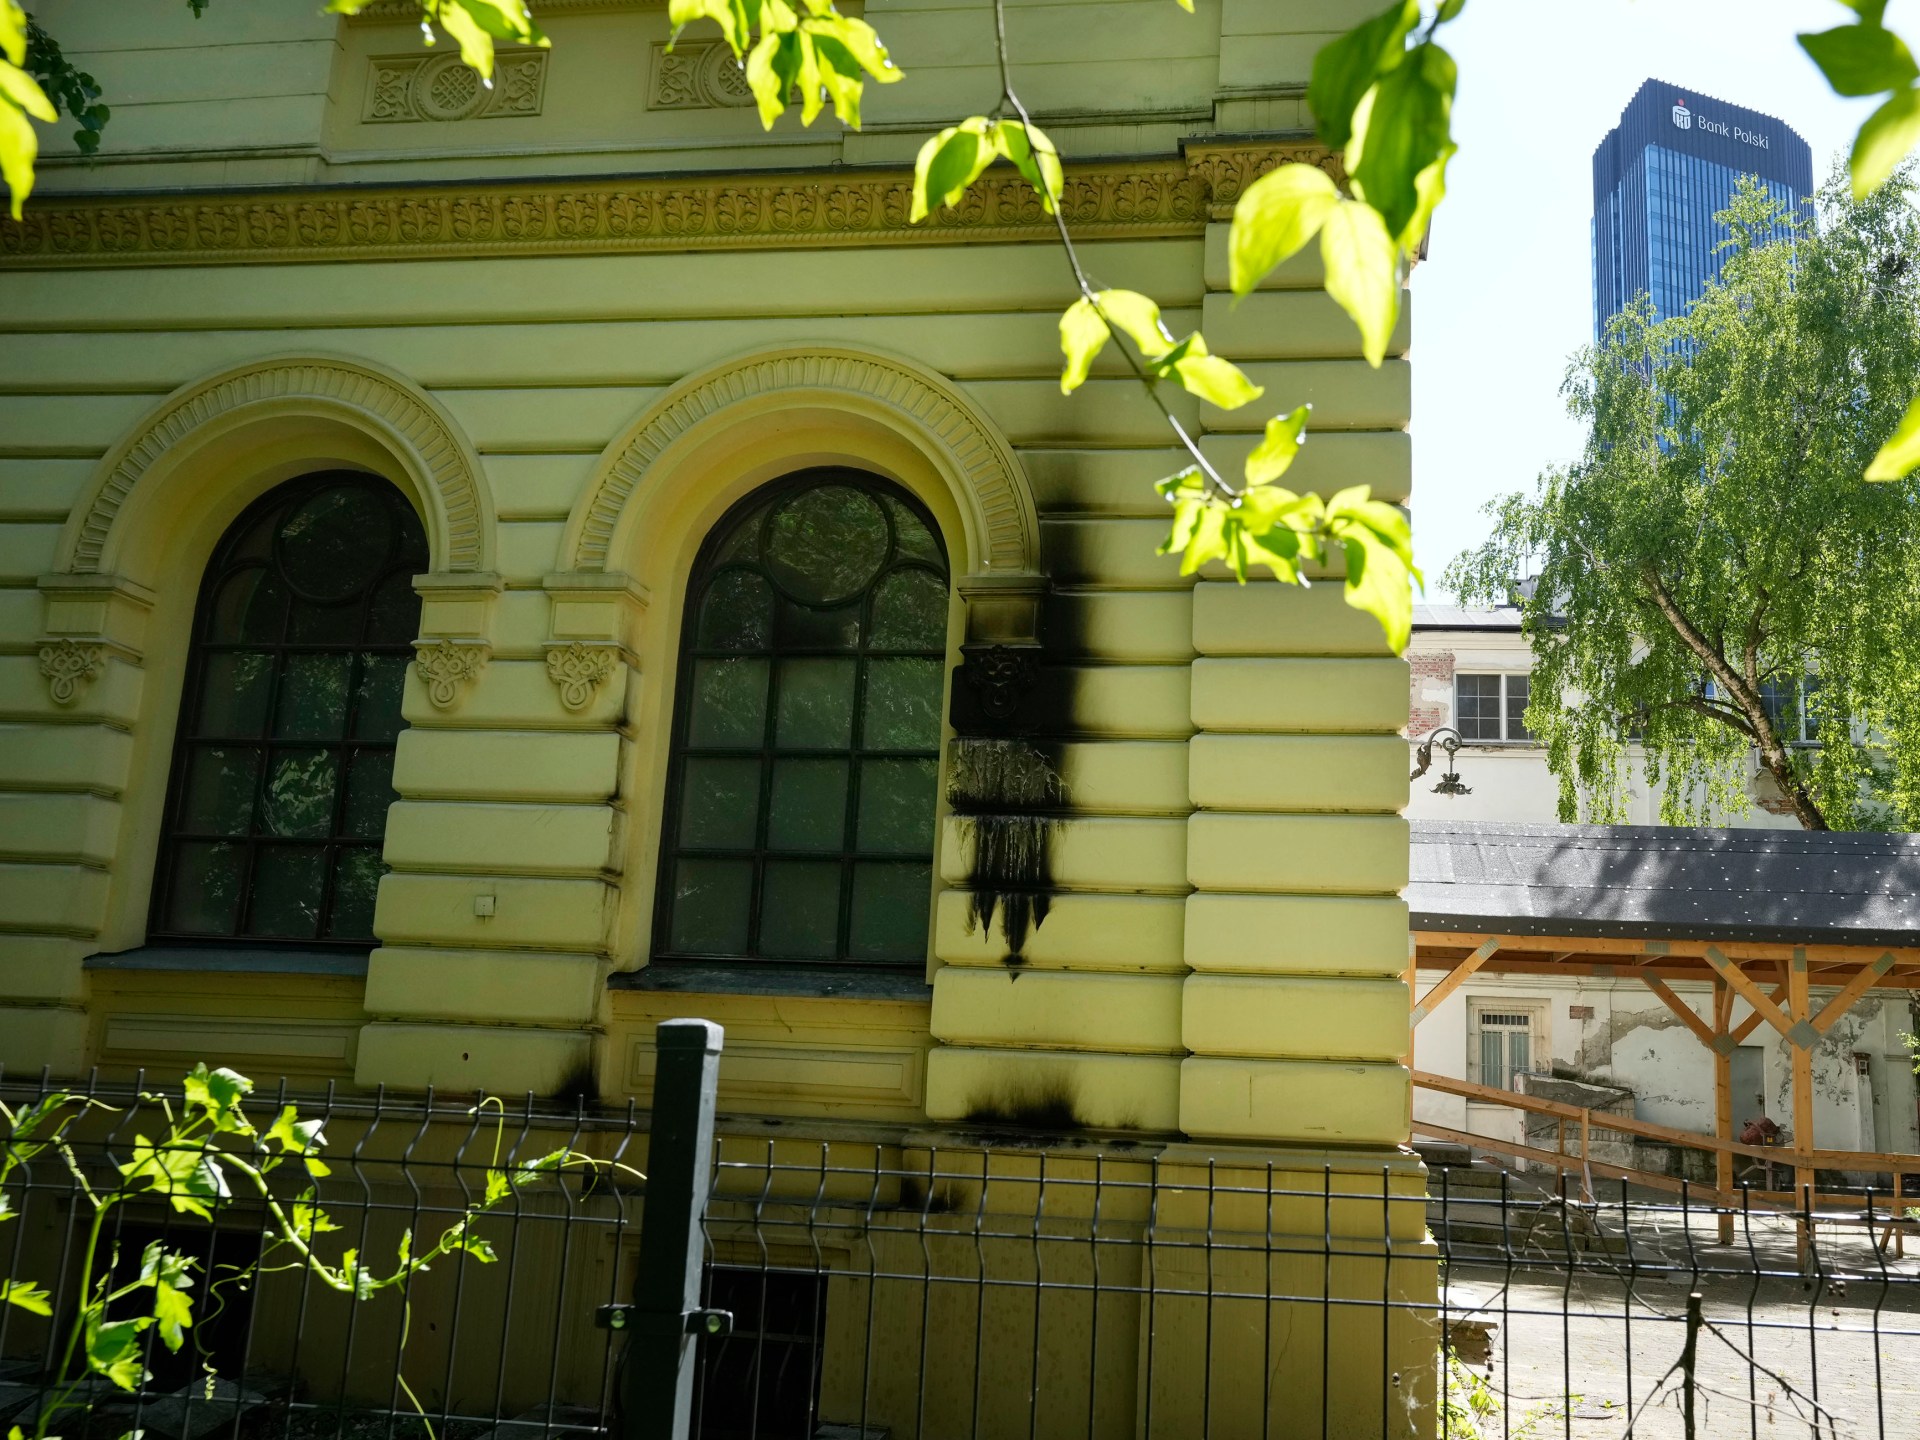 Polscy politycy potępiają zamach bombowy na warszawską synagogę |  Wiadomości z UE